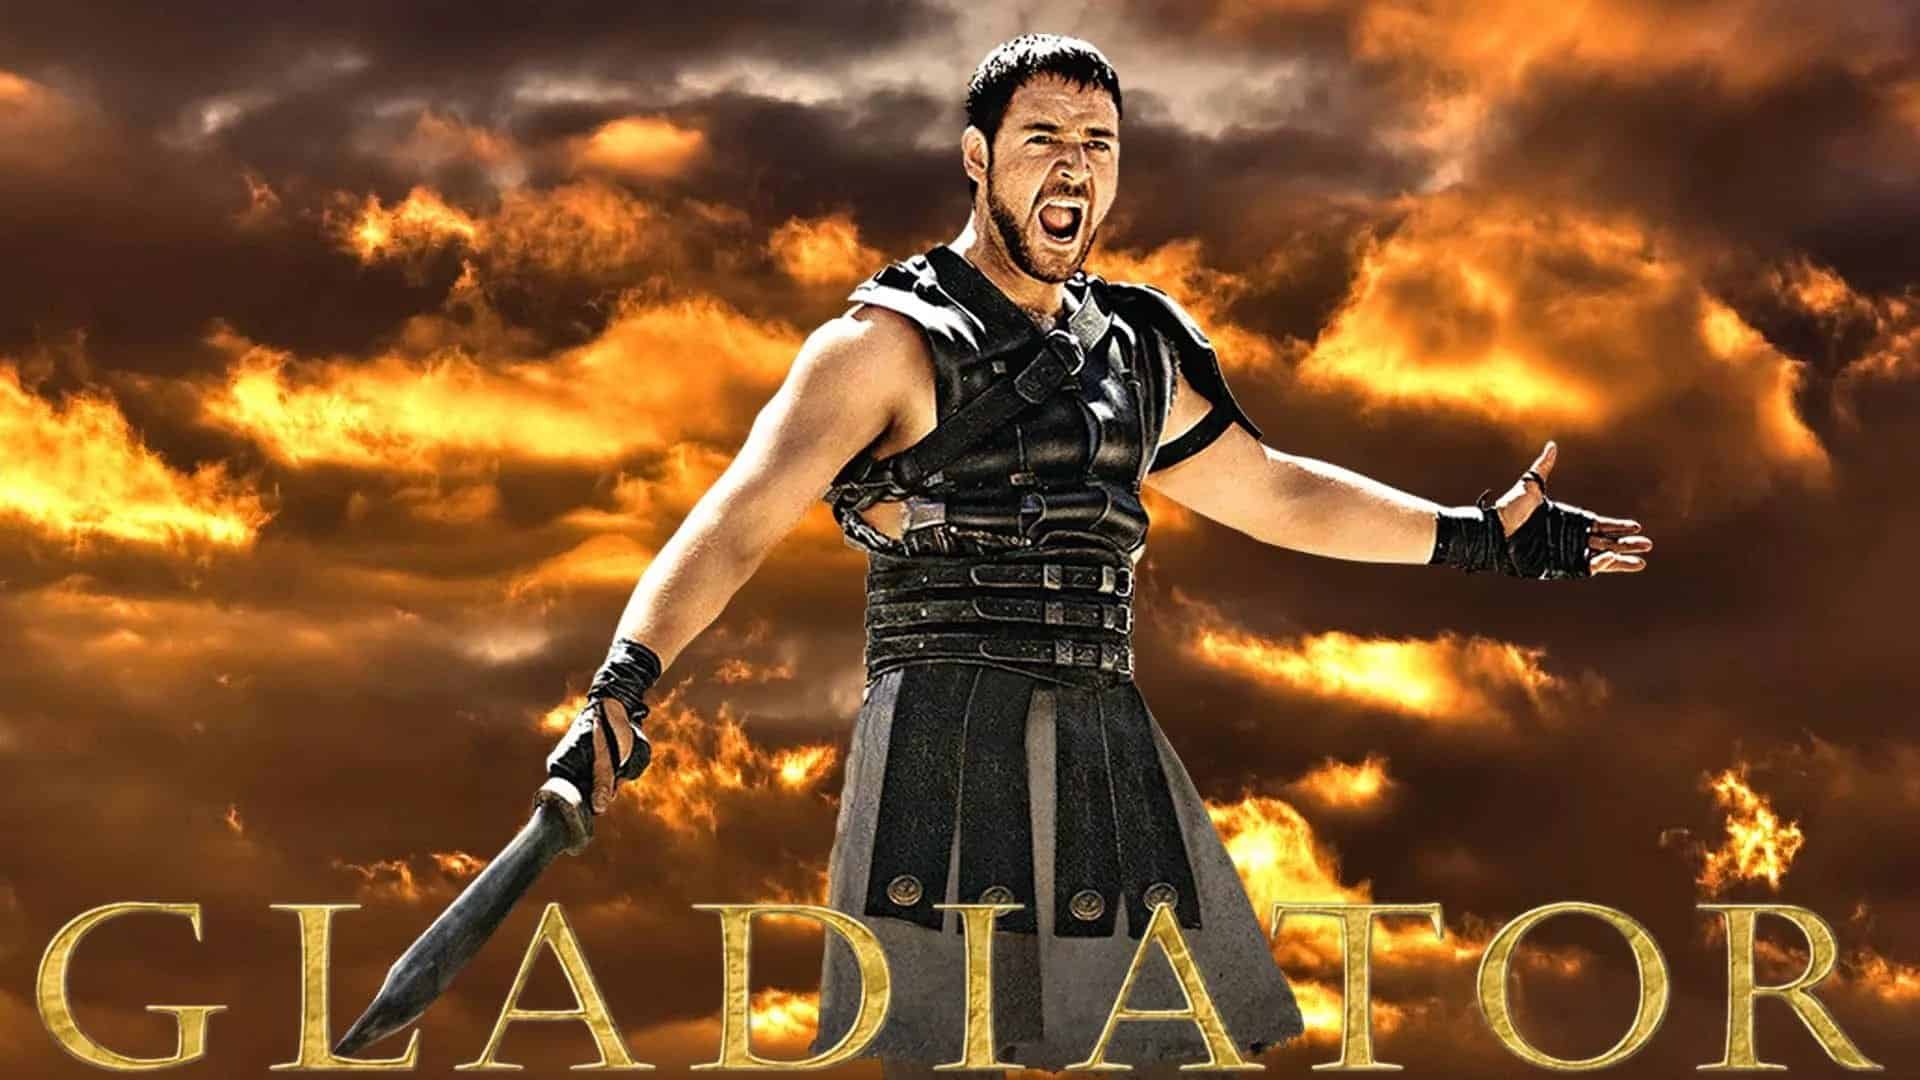 Gladiator for desktop background